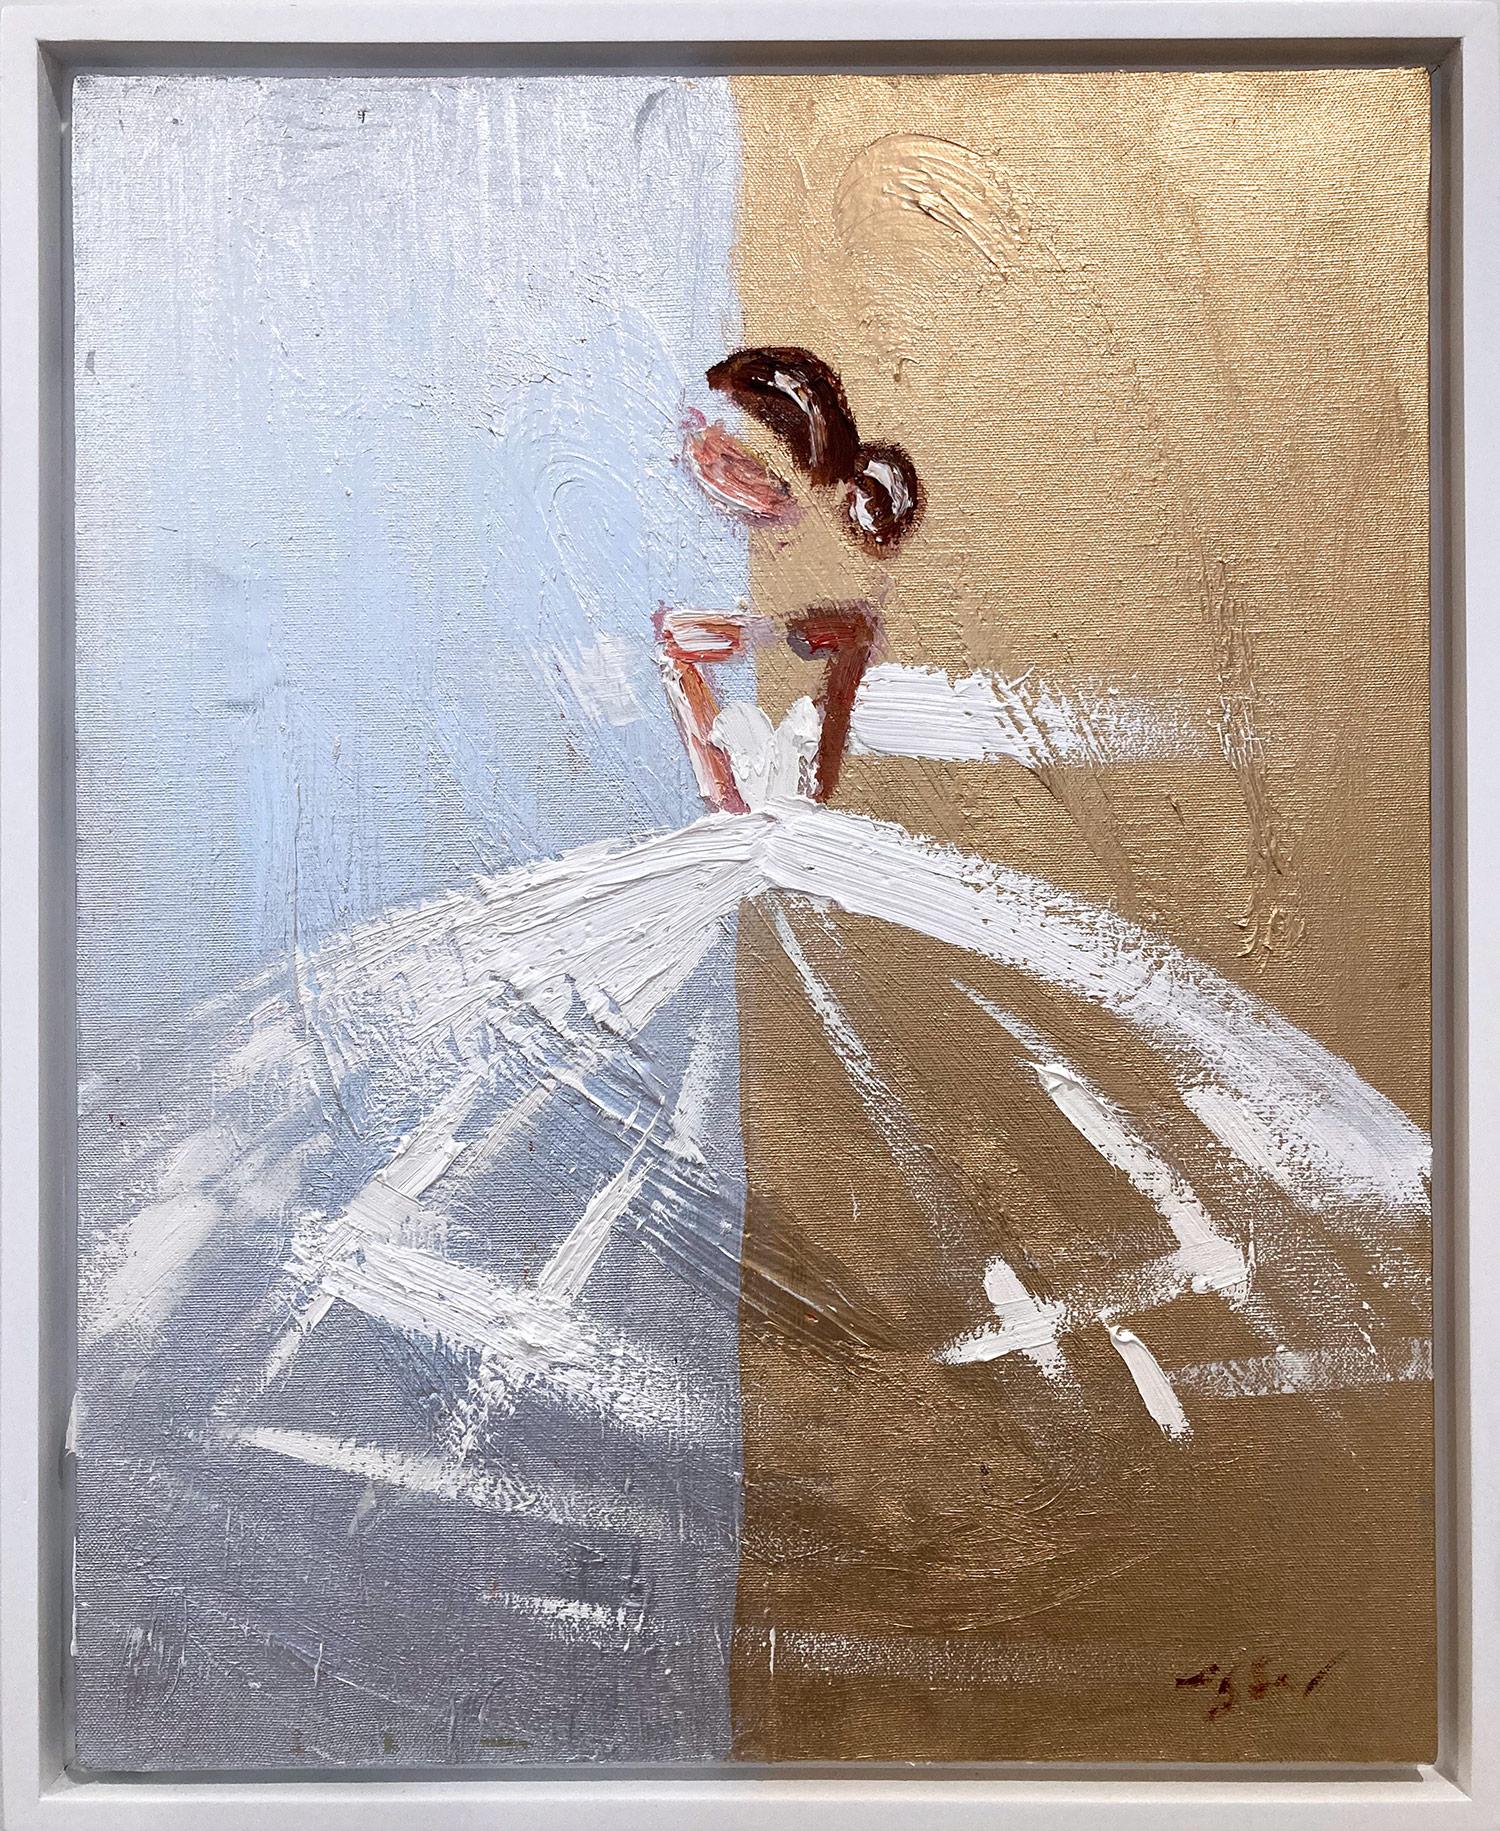 Abstract Painting Cindy Shaoul - "Elegance in Paris" Figure Chanel - Peinture à l'huile sur toile - Haute Couture française